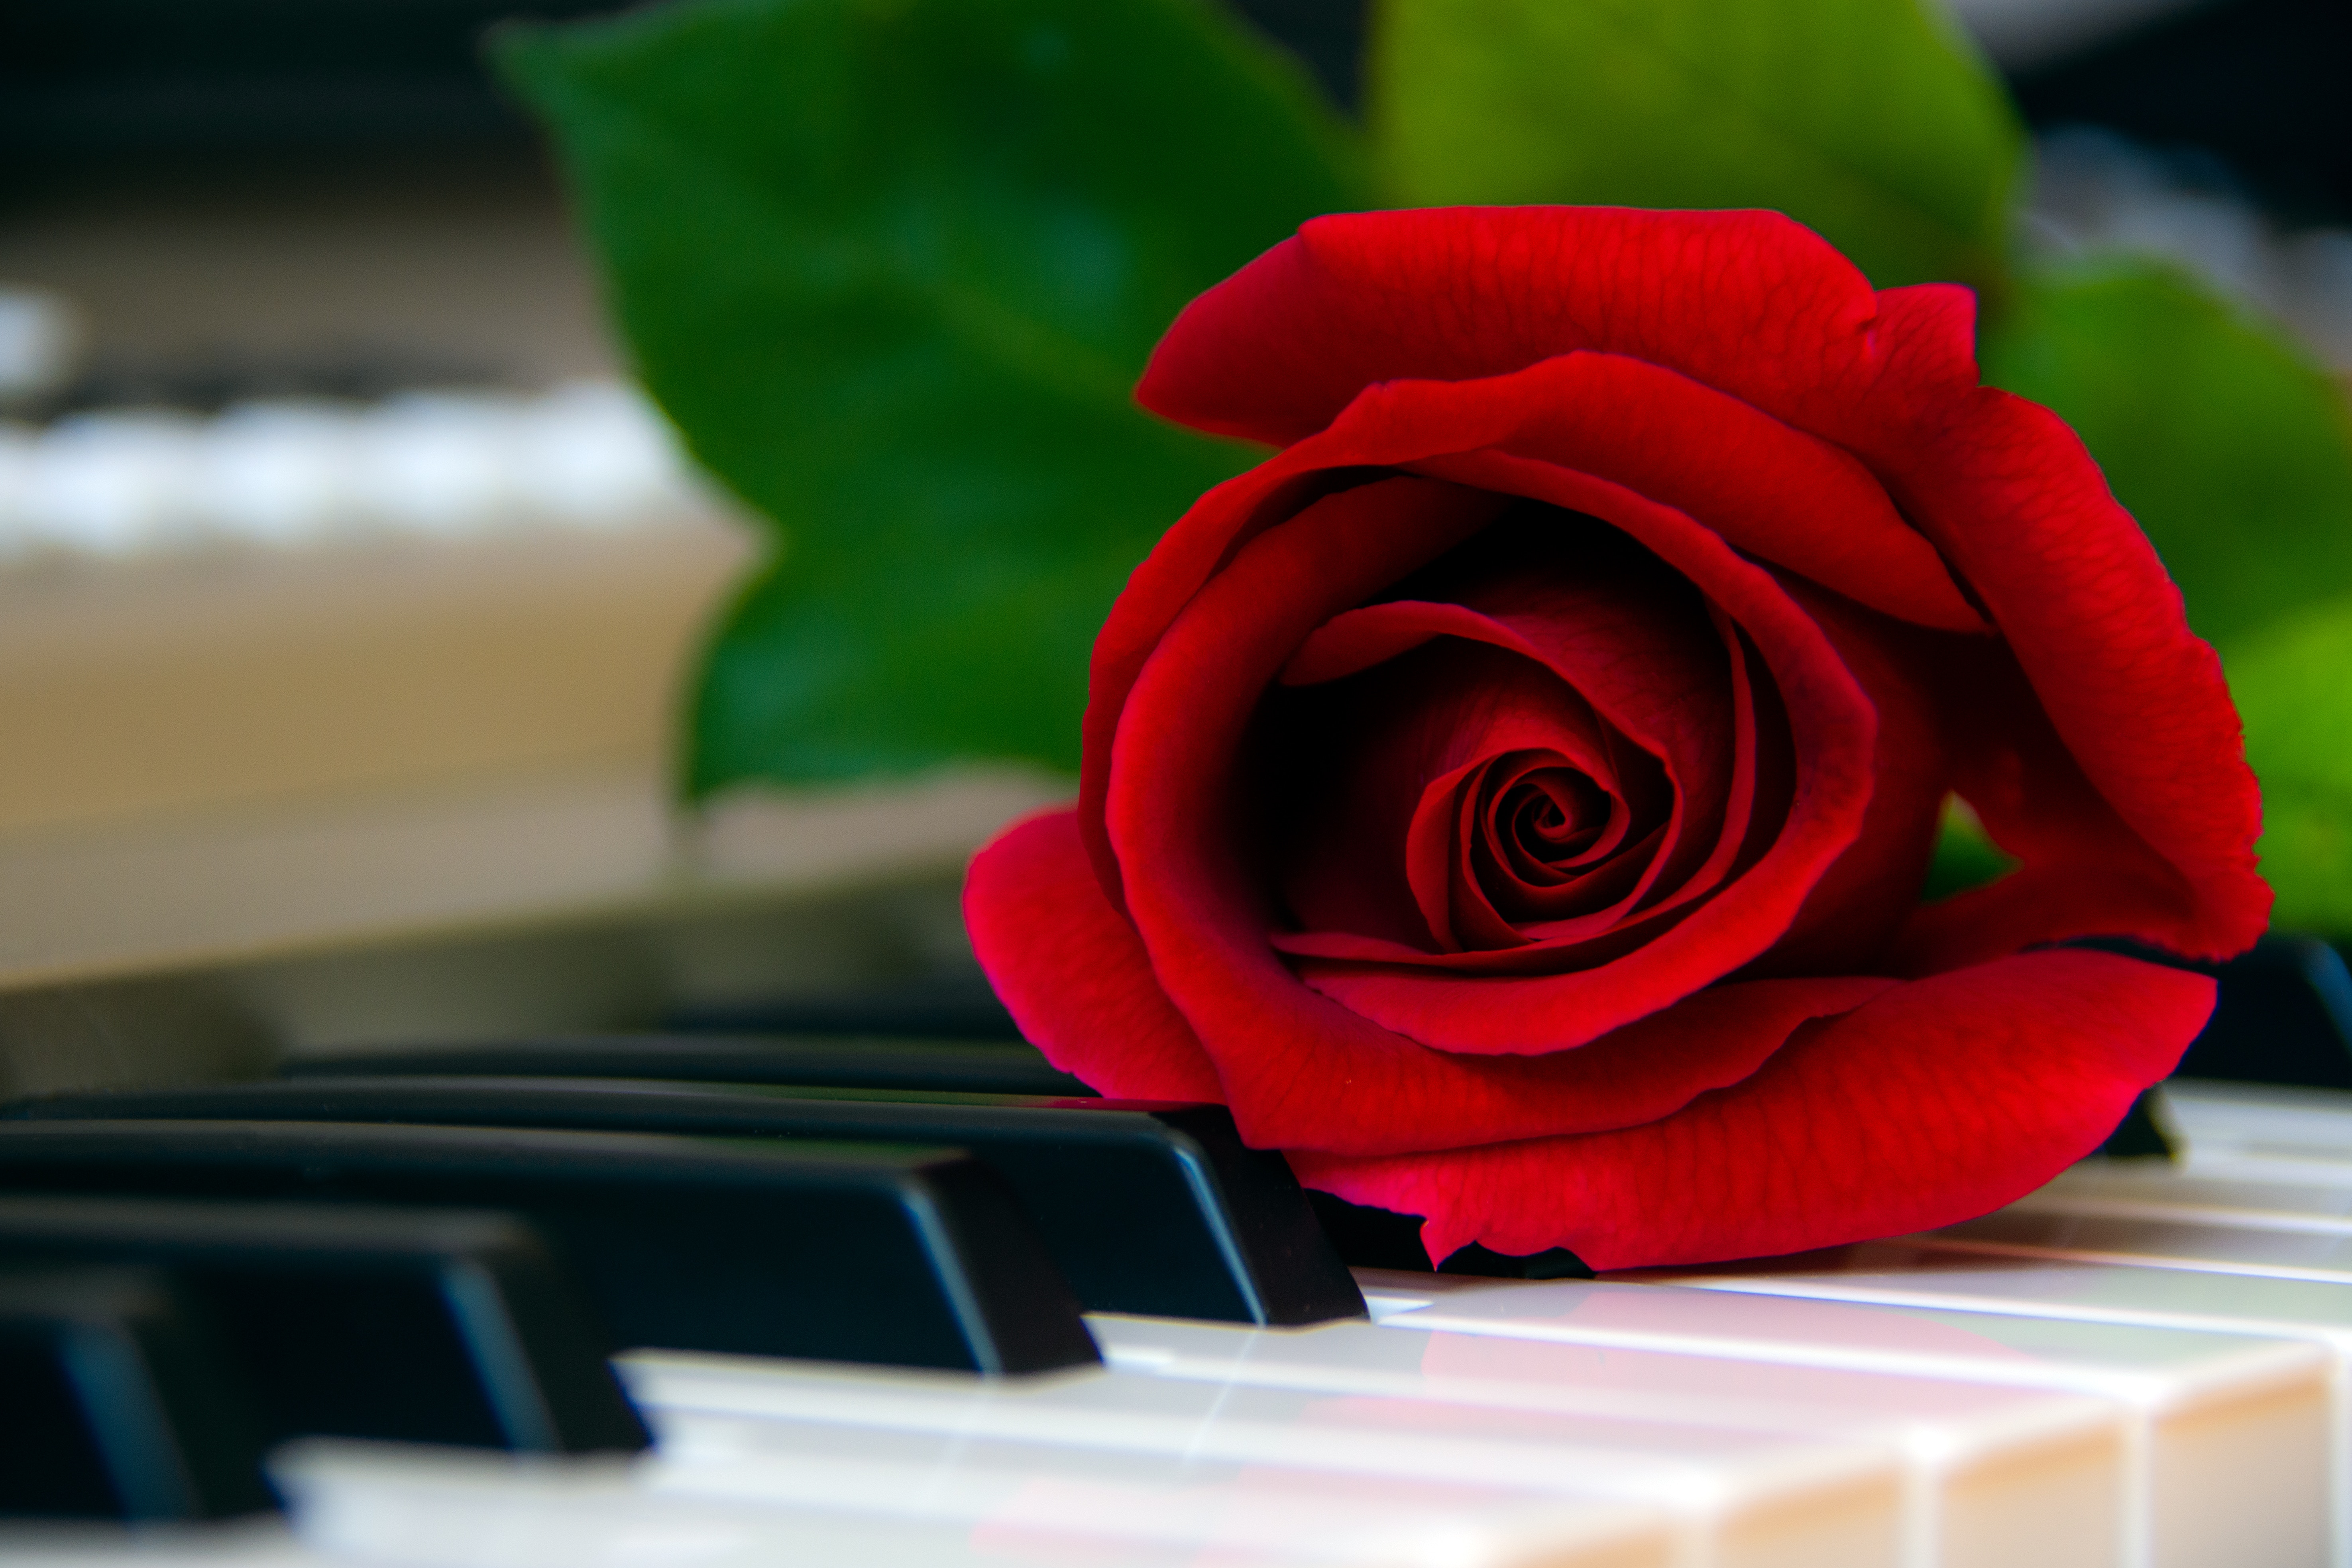 piano, flowers, red, flower, rose flower, rose, keys